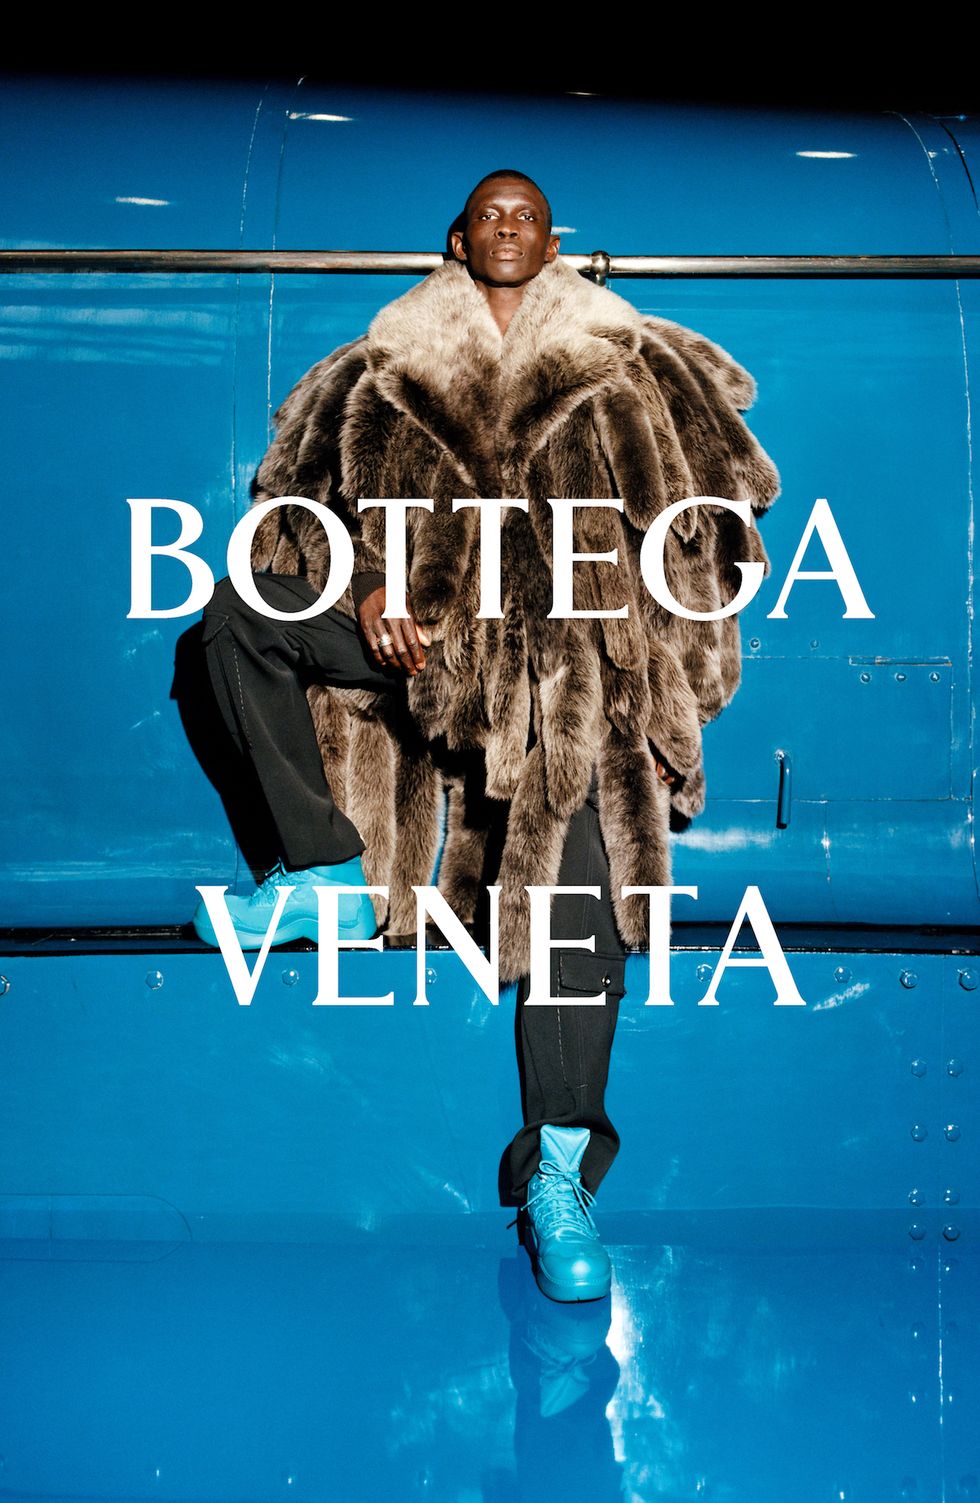 Bottega Veneta ra mắt bộ sưu tập với hai thái cực vui - buồn đối lập - 1